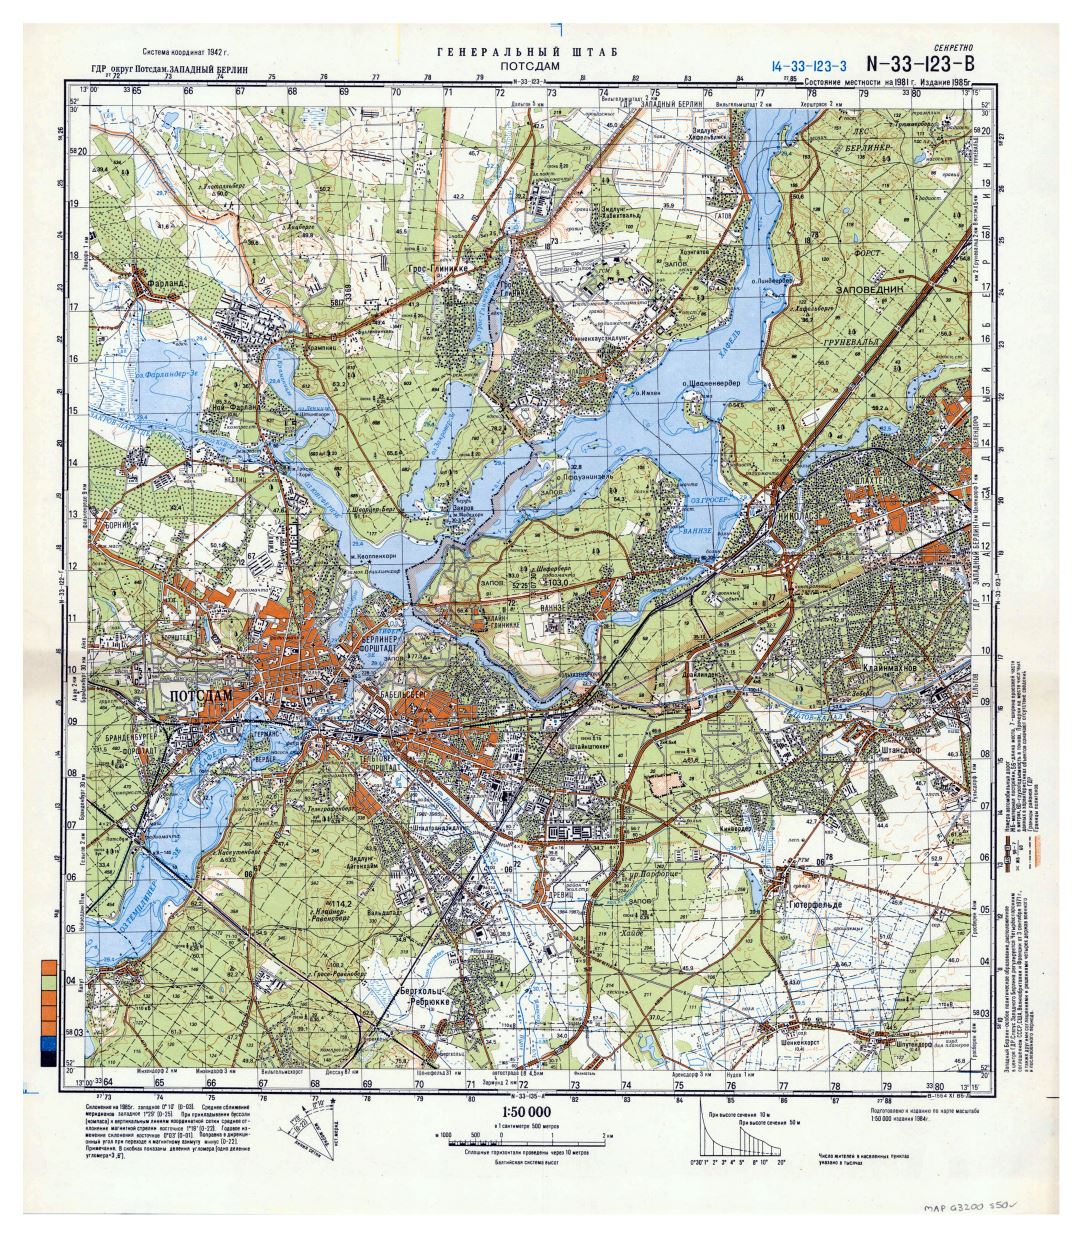 Mapa grande escala topográfica de Potsdam y sus alrededores en ruso - 1:50.000